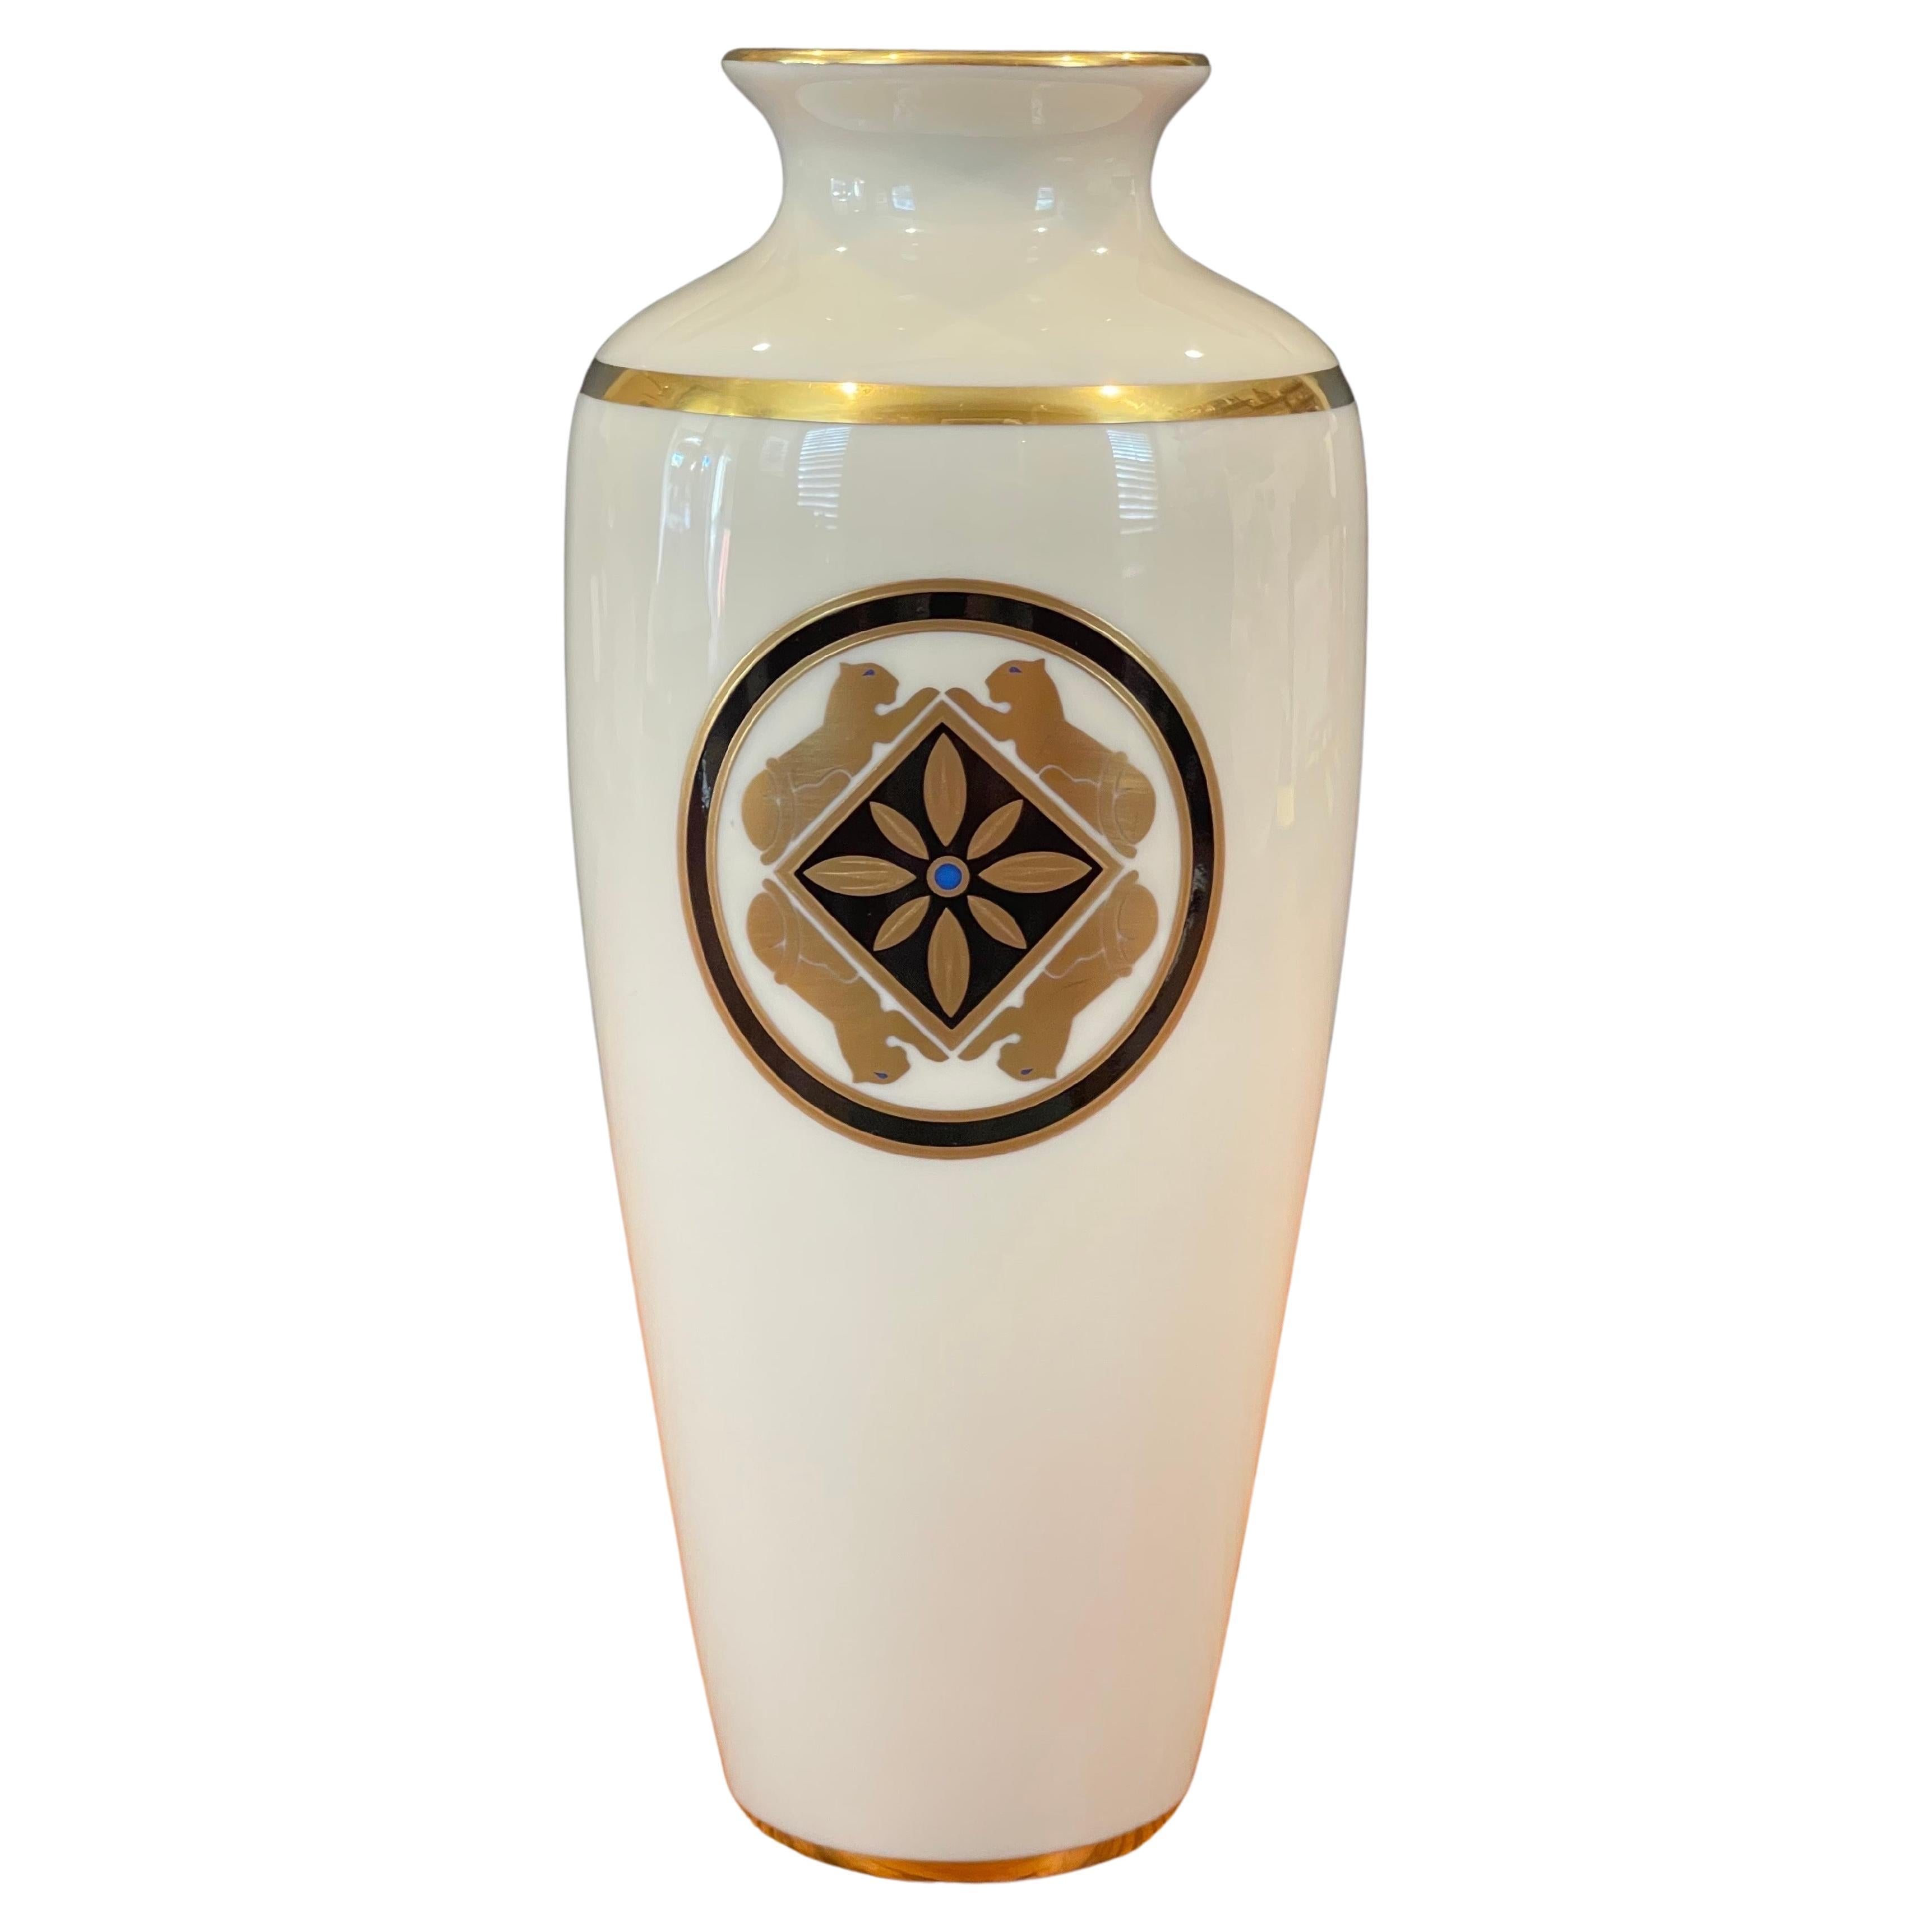 https://a.1stdibscdn.com/la-maison-de-l-art-deco-porcelain-vase-by-cartier-for-sale/f_9366/f_283463221650637515598/f_28346322_1650637517049_bg_processed.jpg